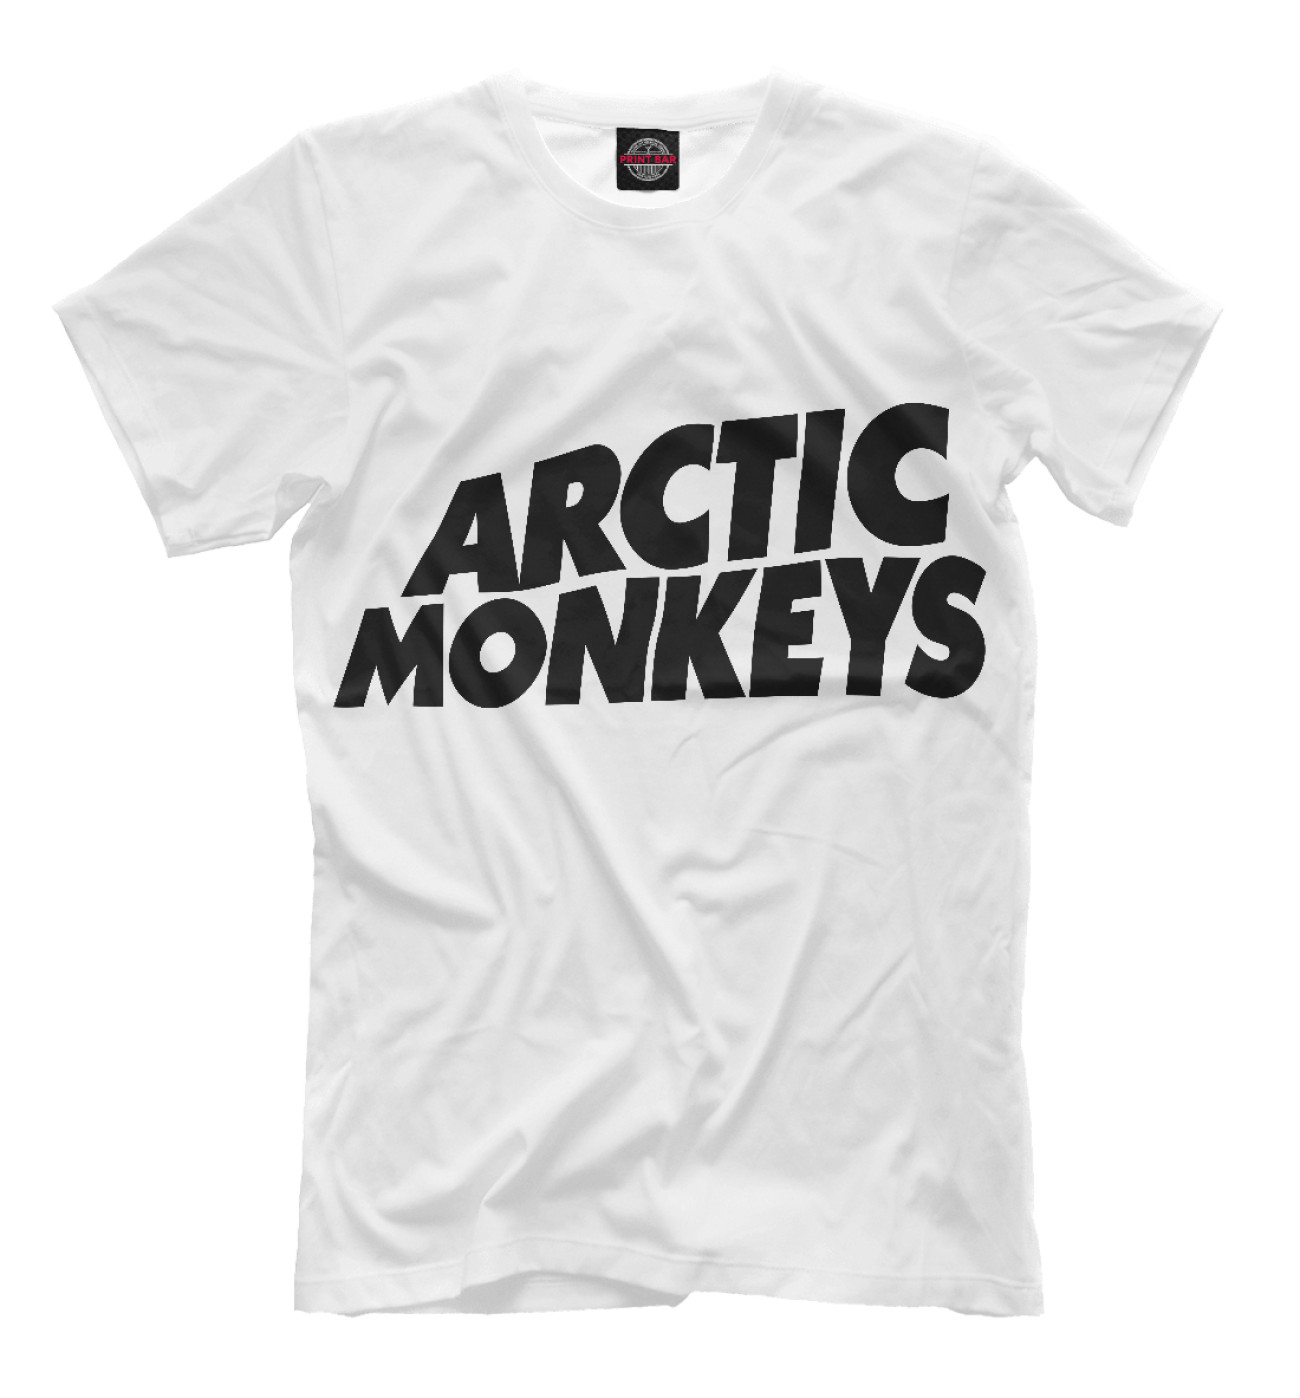 Мужская Футболка Arctic Monkeys, артикул: MZK-861463-fut-2